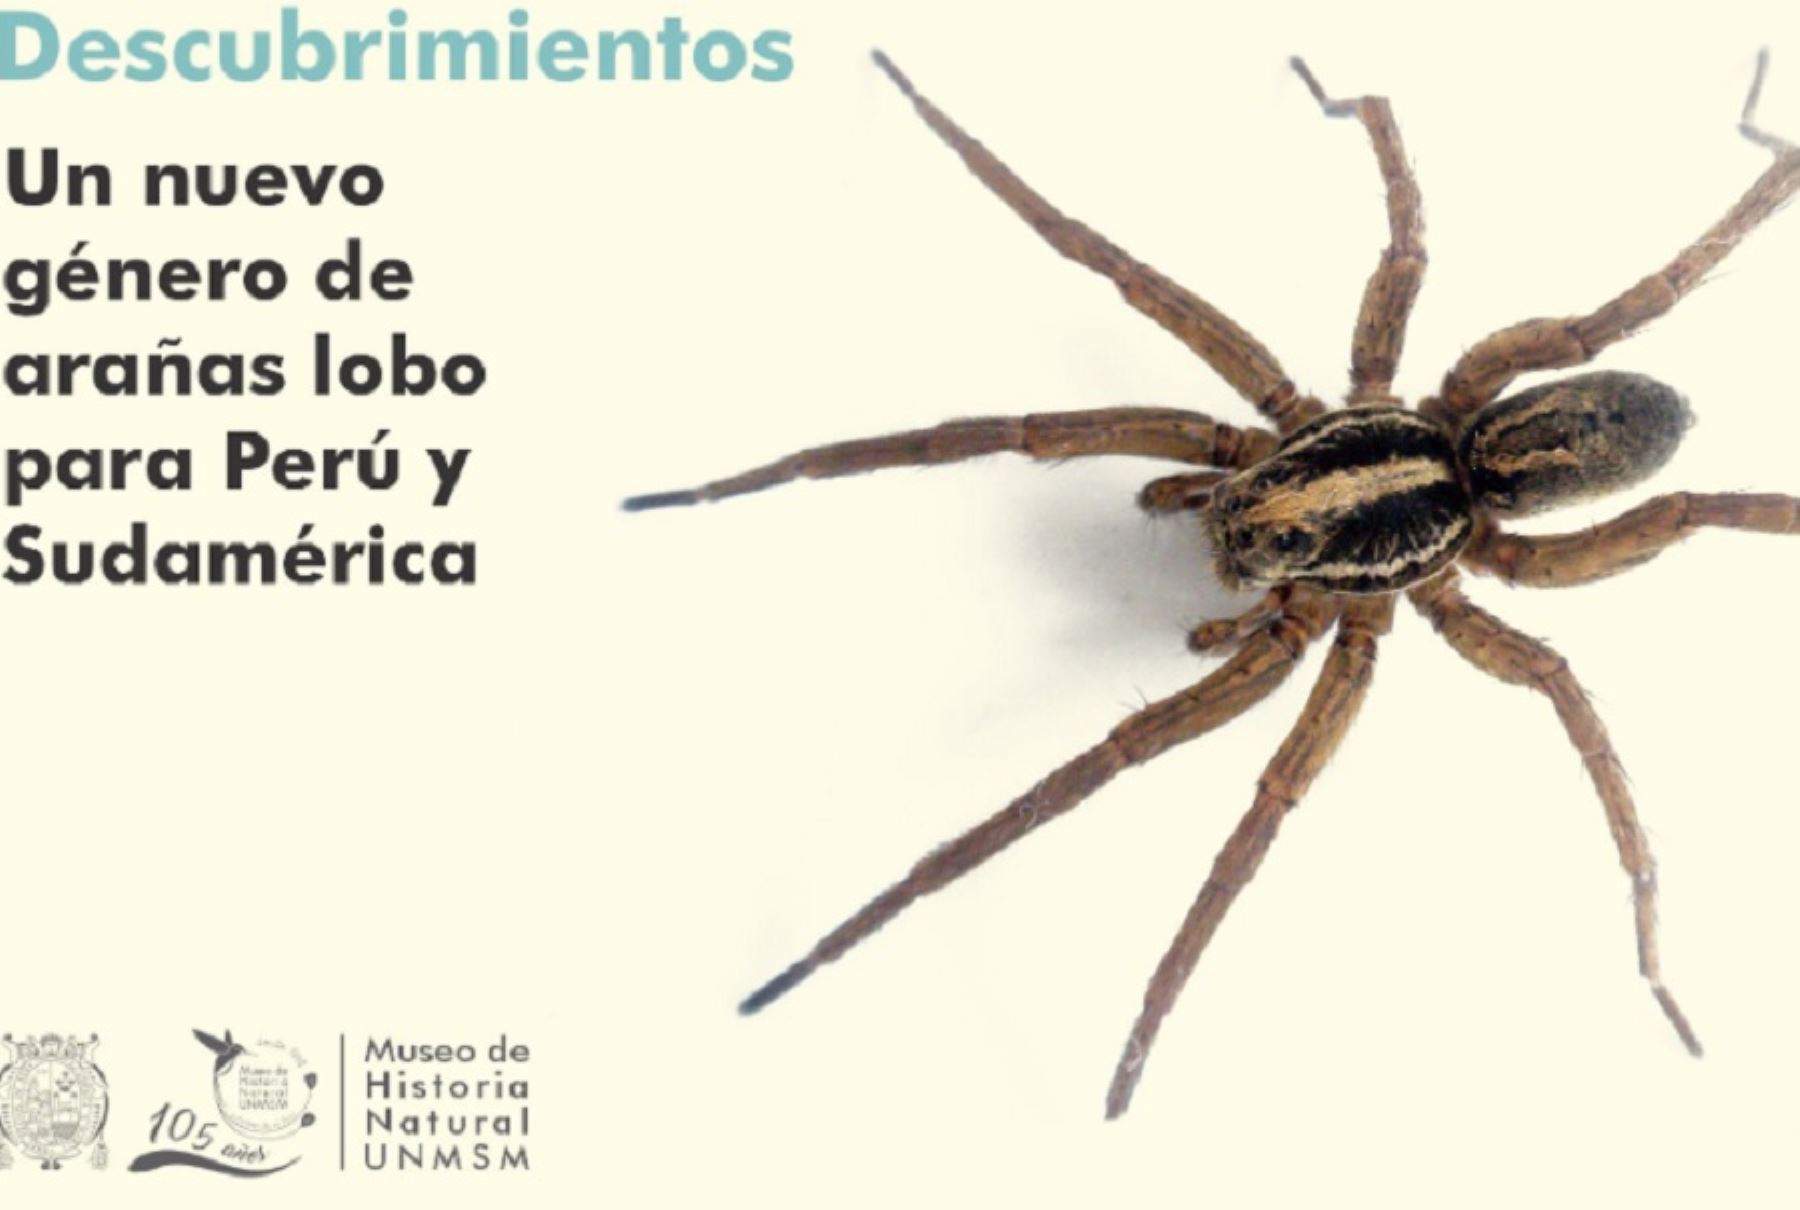 Un nuevo género de araña lobo para Perú y Sudamérica, denominado “Tropicosa thorelli” ha sido descubierto por el biólogo Williams Paredes Munguía, investigador del Departamento de Entomología del Museo de Historia Natural de la Universidad Nacional Mayor de San Marcos.